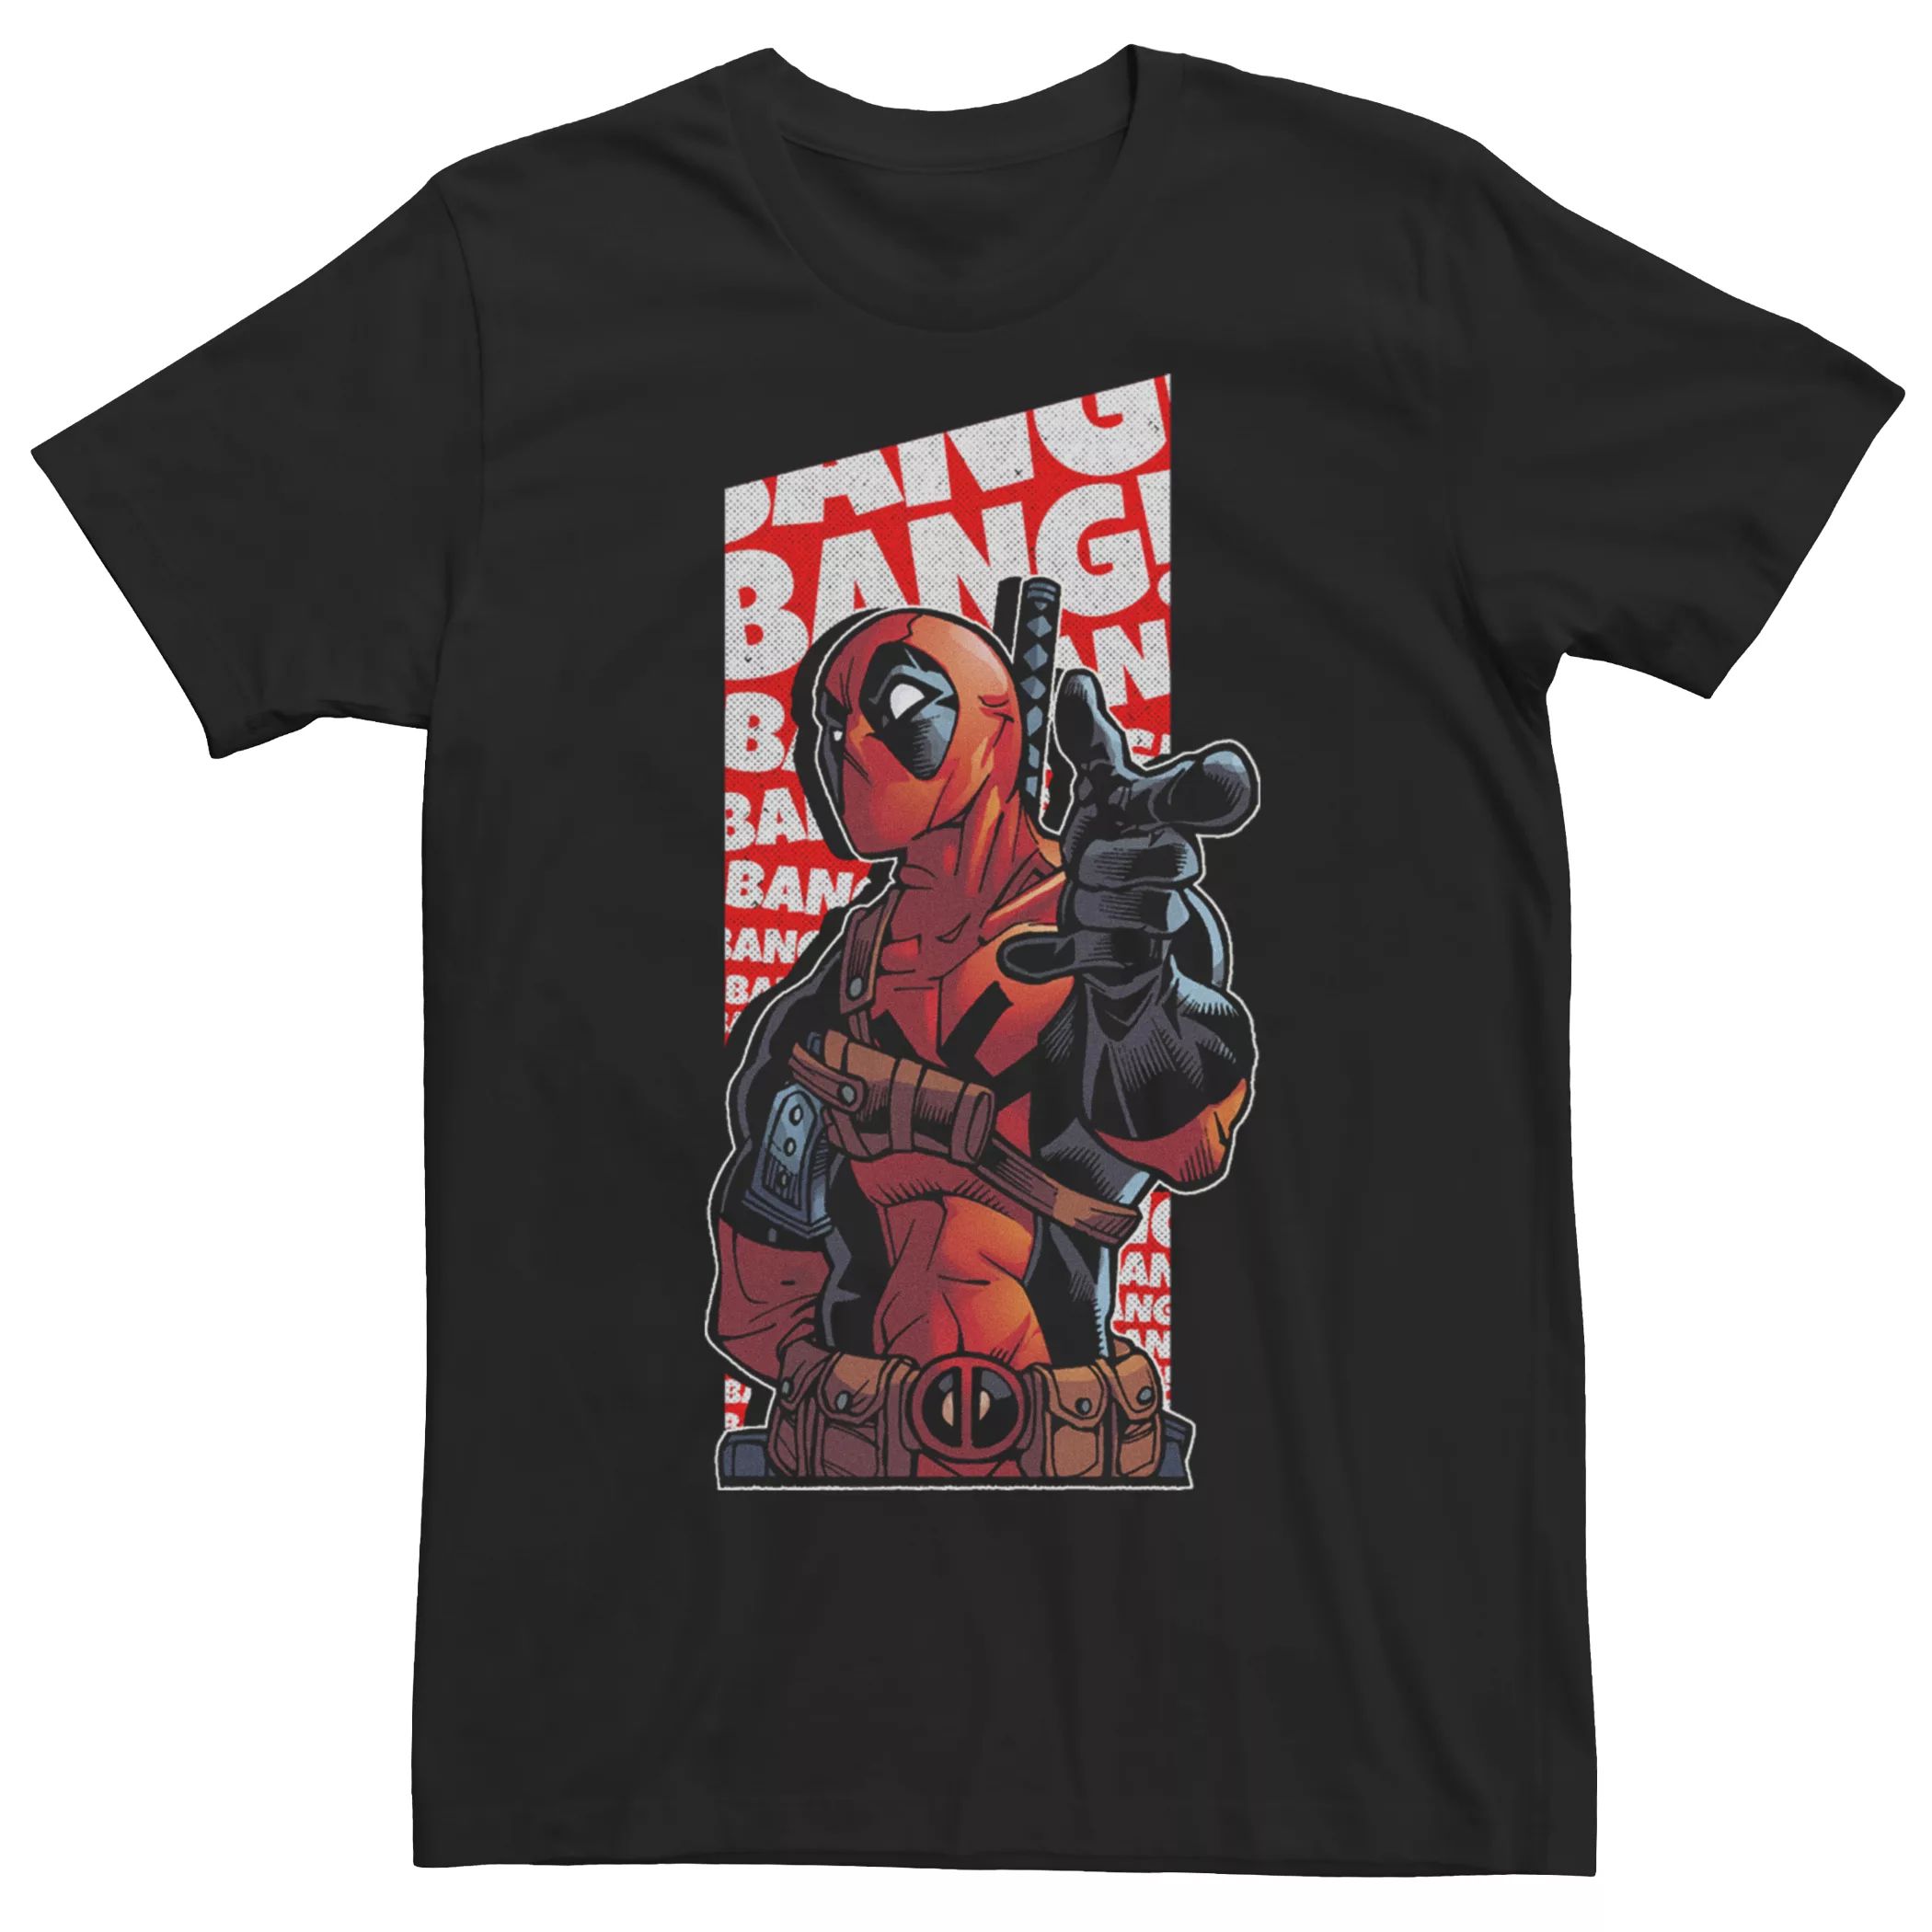 Мужская футболка Bang Bang Bang Bang с Дэдпулом из комиксов Marvel Licensed Character цена и фото